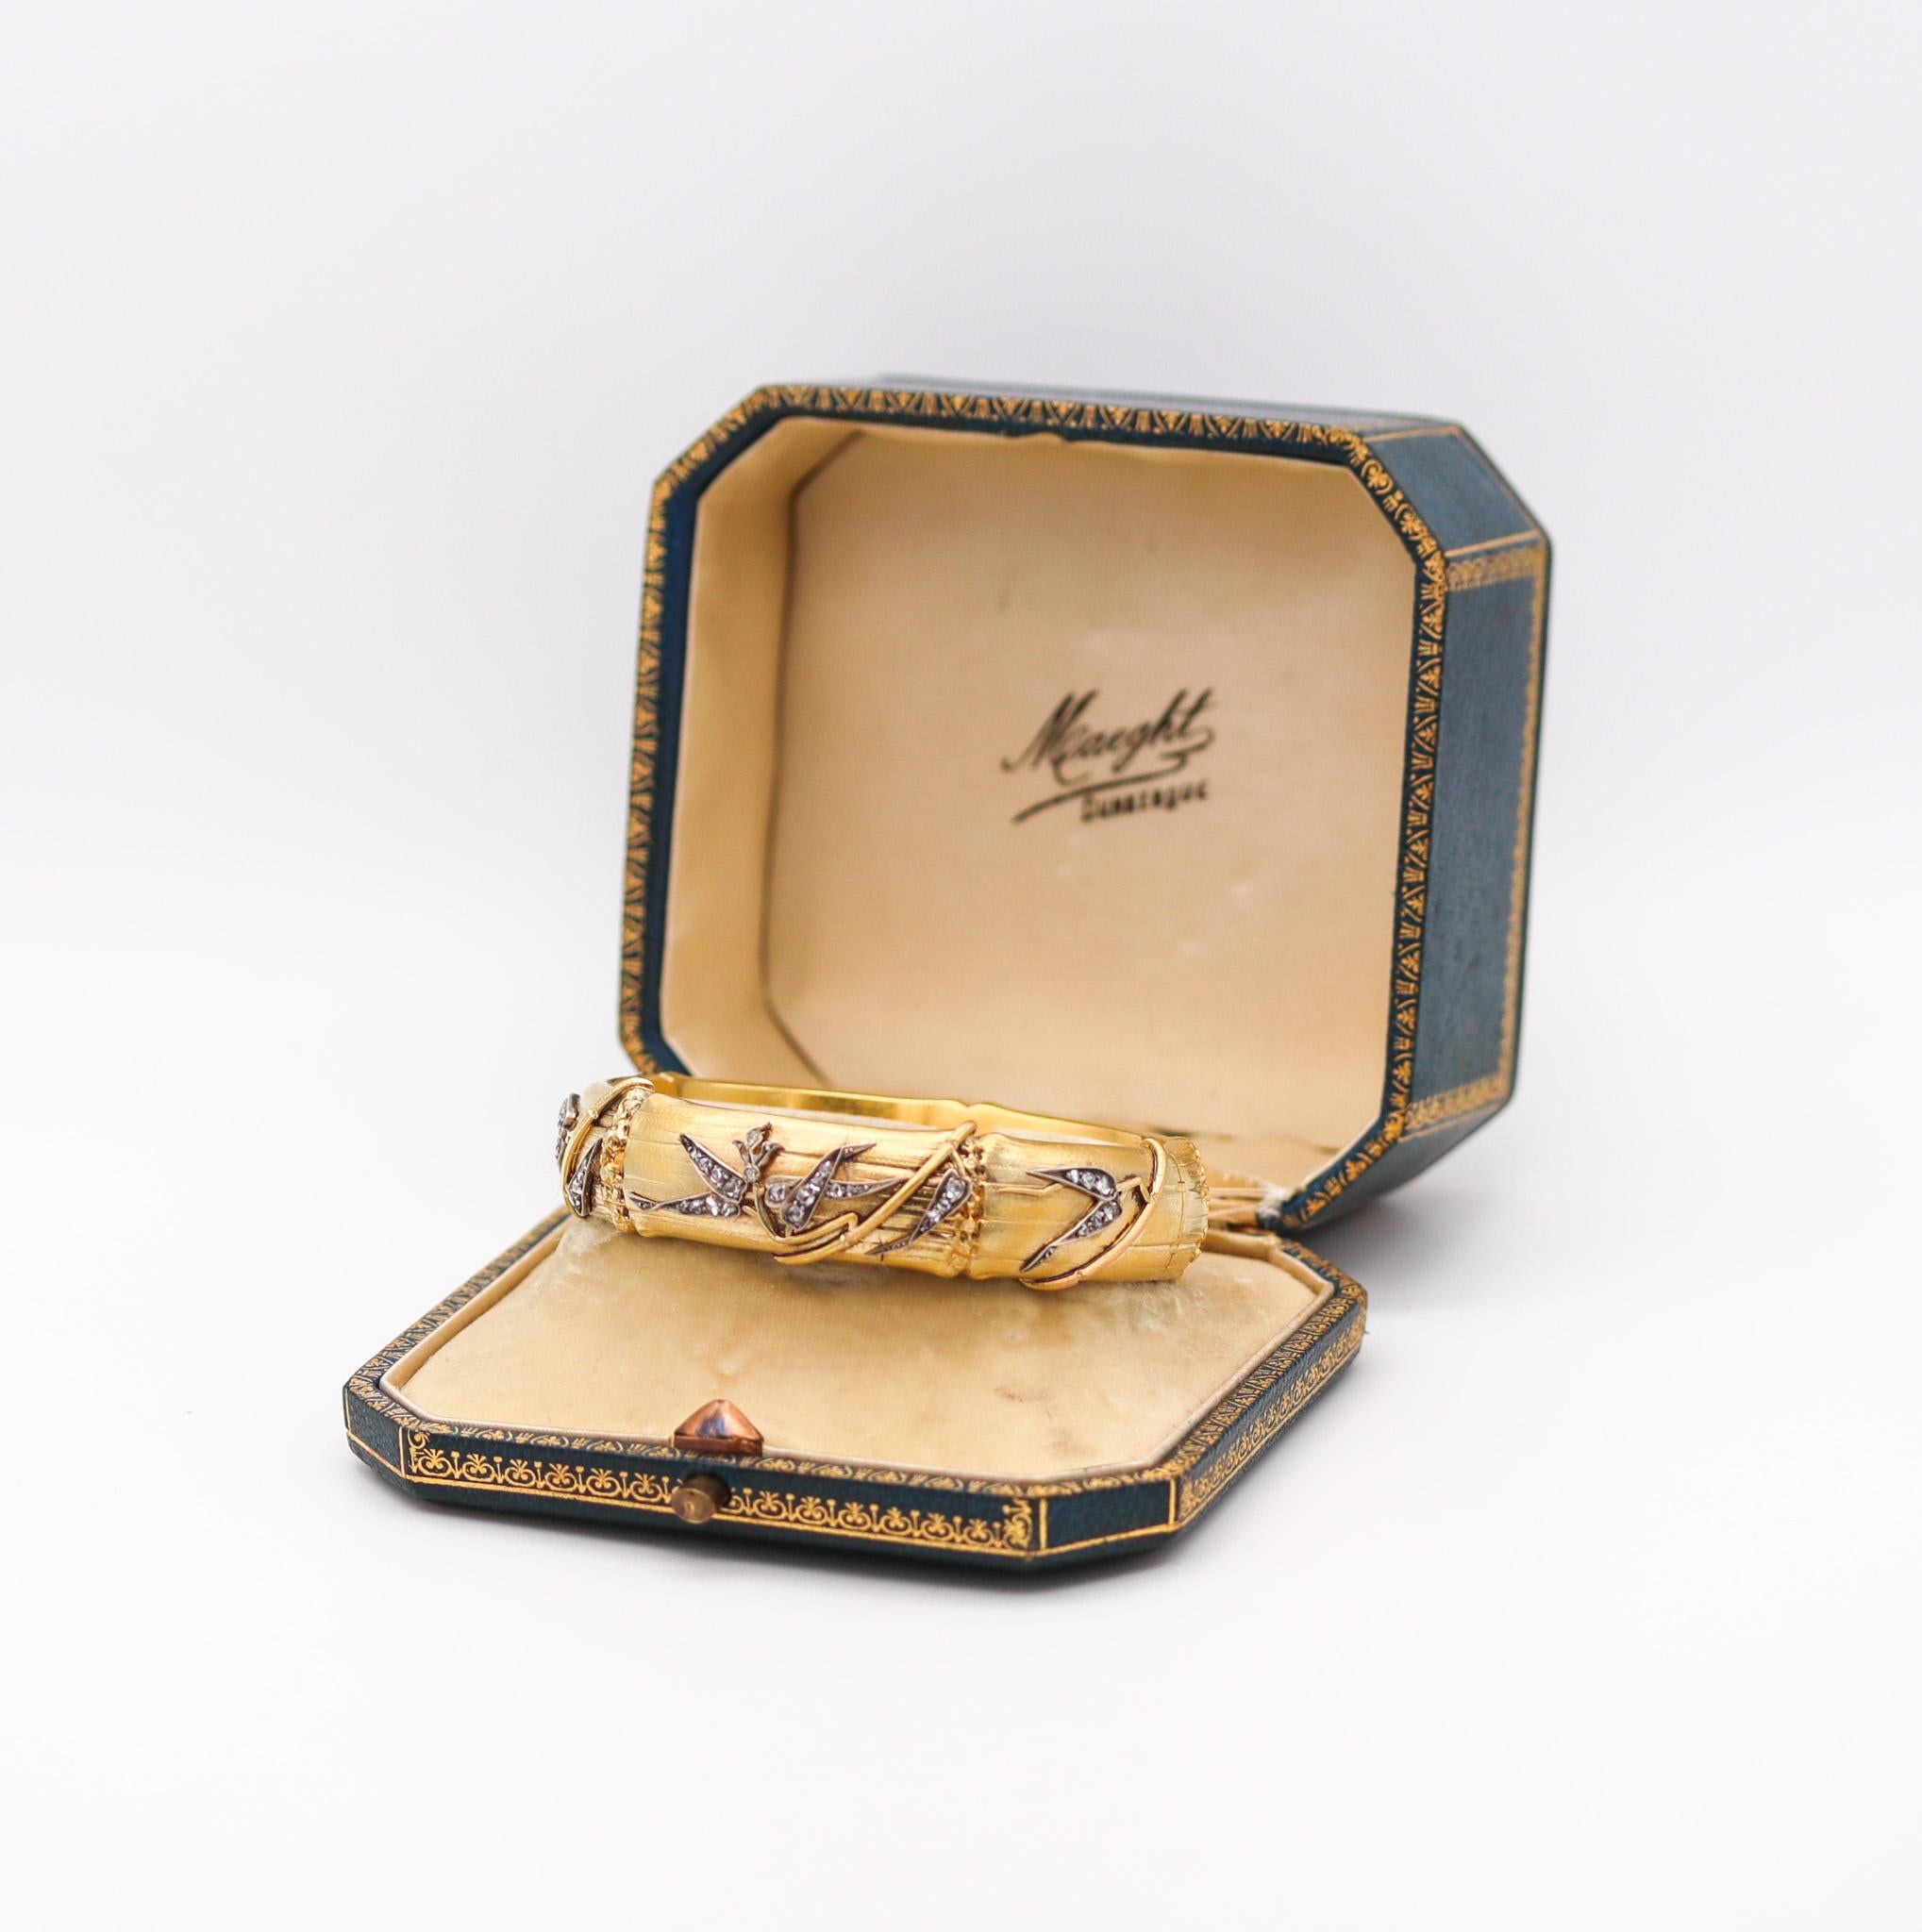 Bracelet de chinoiseries françaises.

Fabuleux bracelet de style chinoiserie créé à Paris France à la fin du 19ème siècle, vers 1880. Il a été conçu avec des motifs organiques et orientaux composés de motifs de bambous. Soigneusement réalisé en or